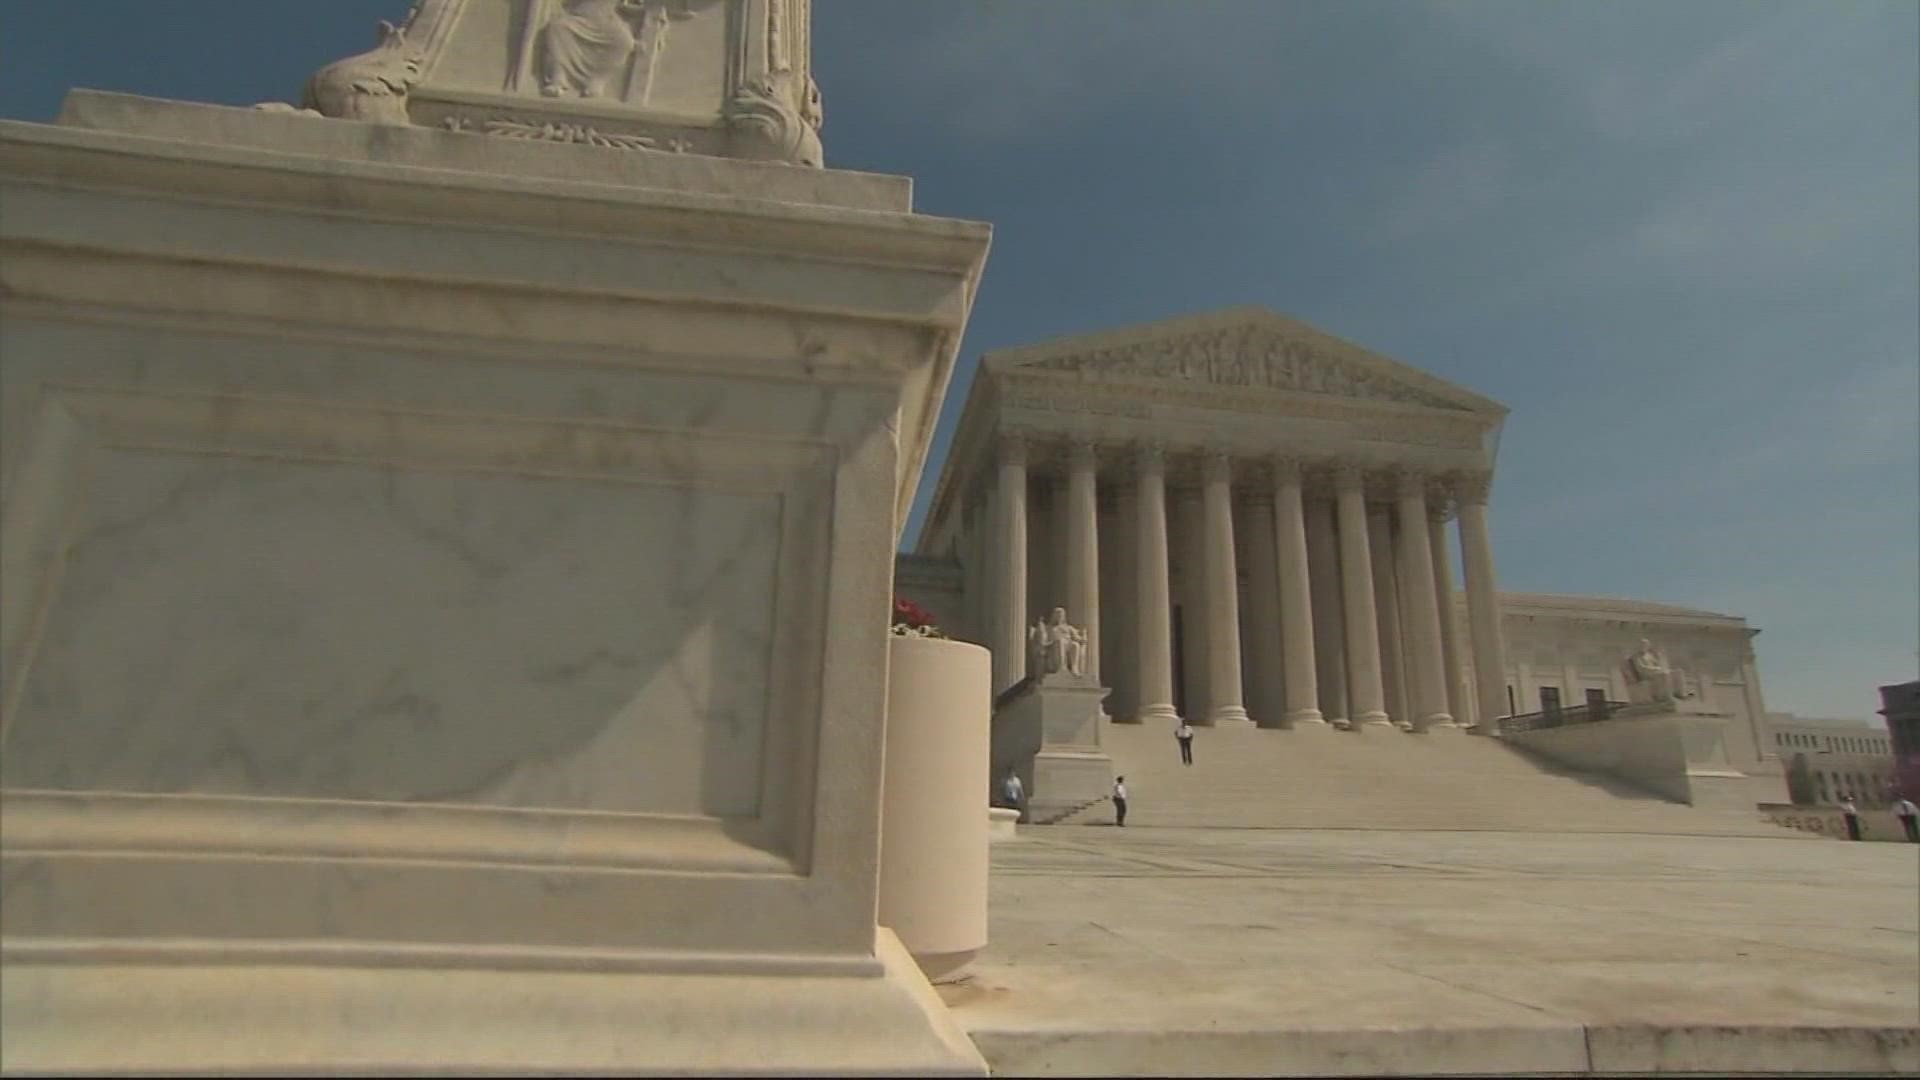 An unprecedented leak suggests a majority of Supreme Court justices favor overturning Roe v. Wade.